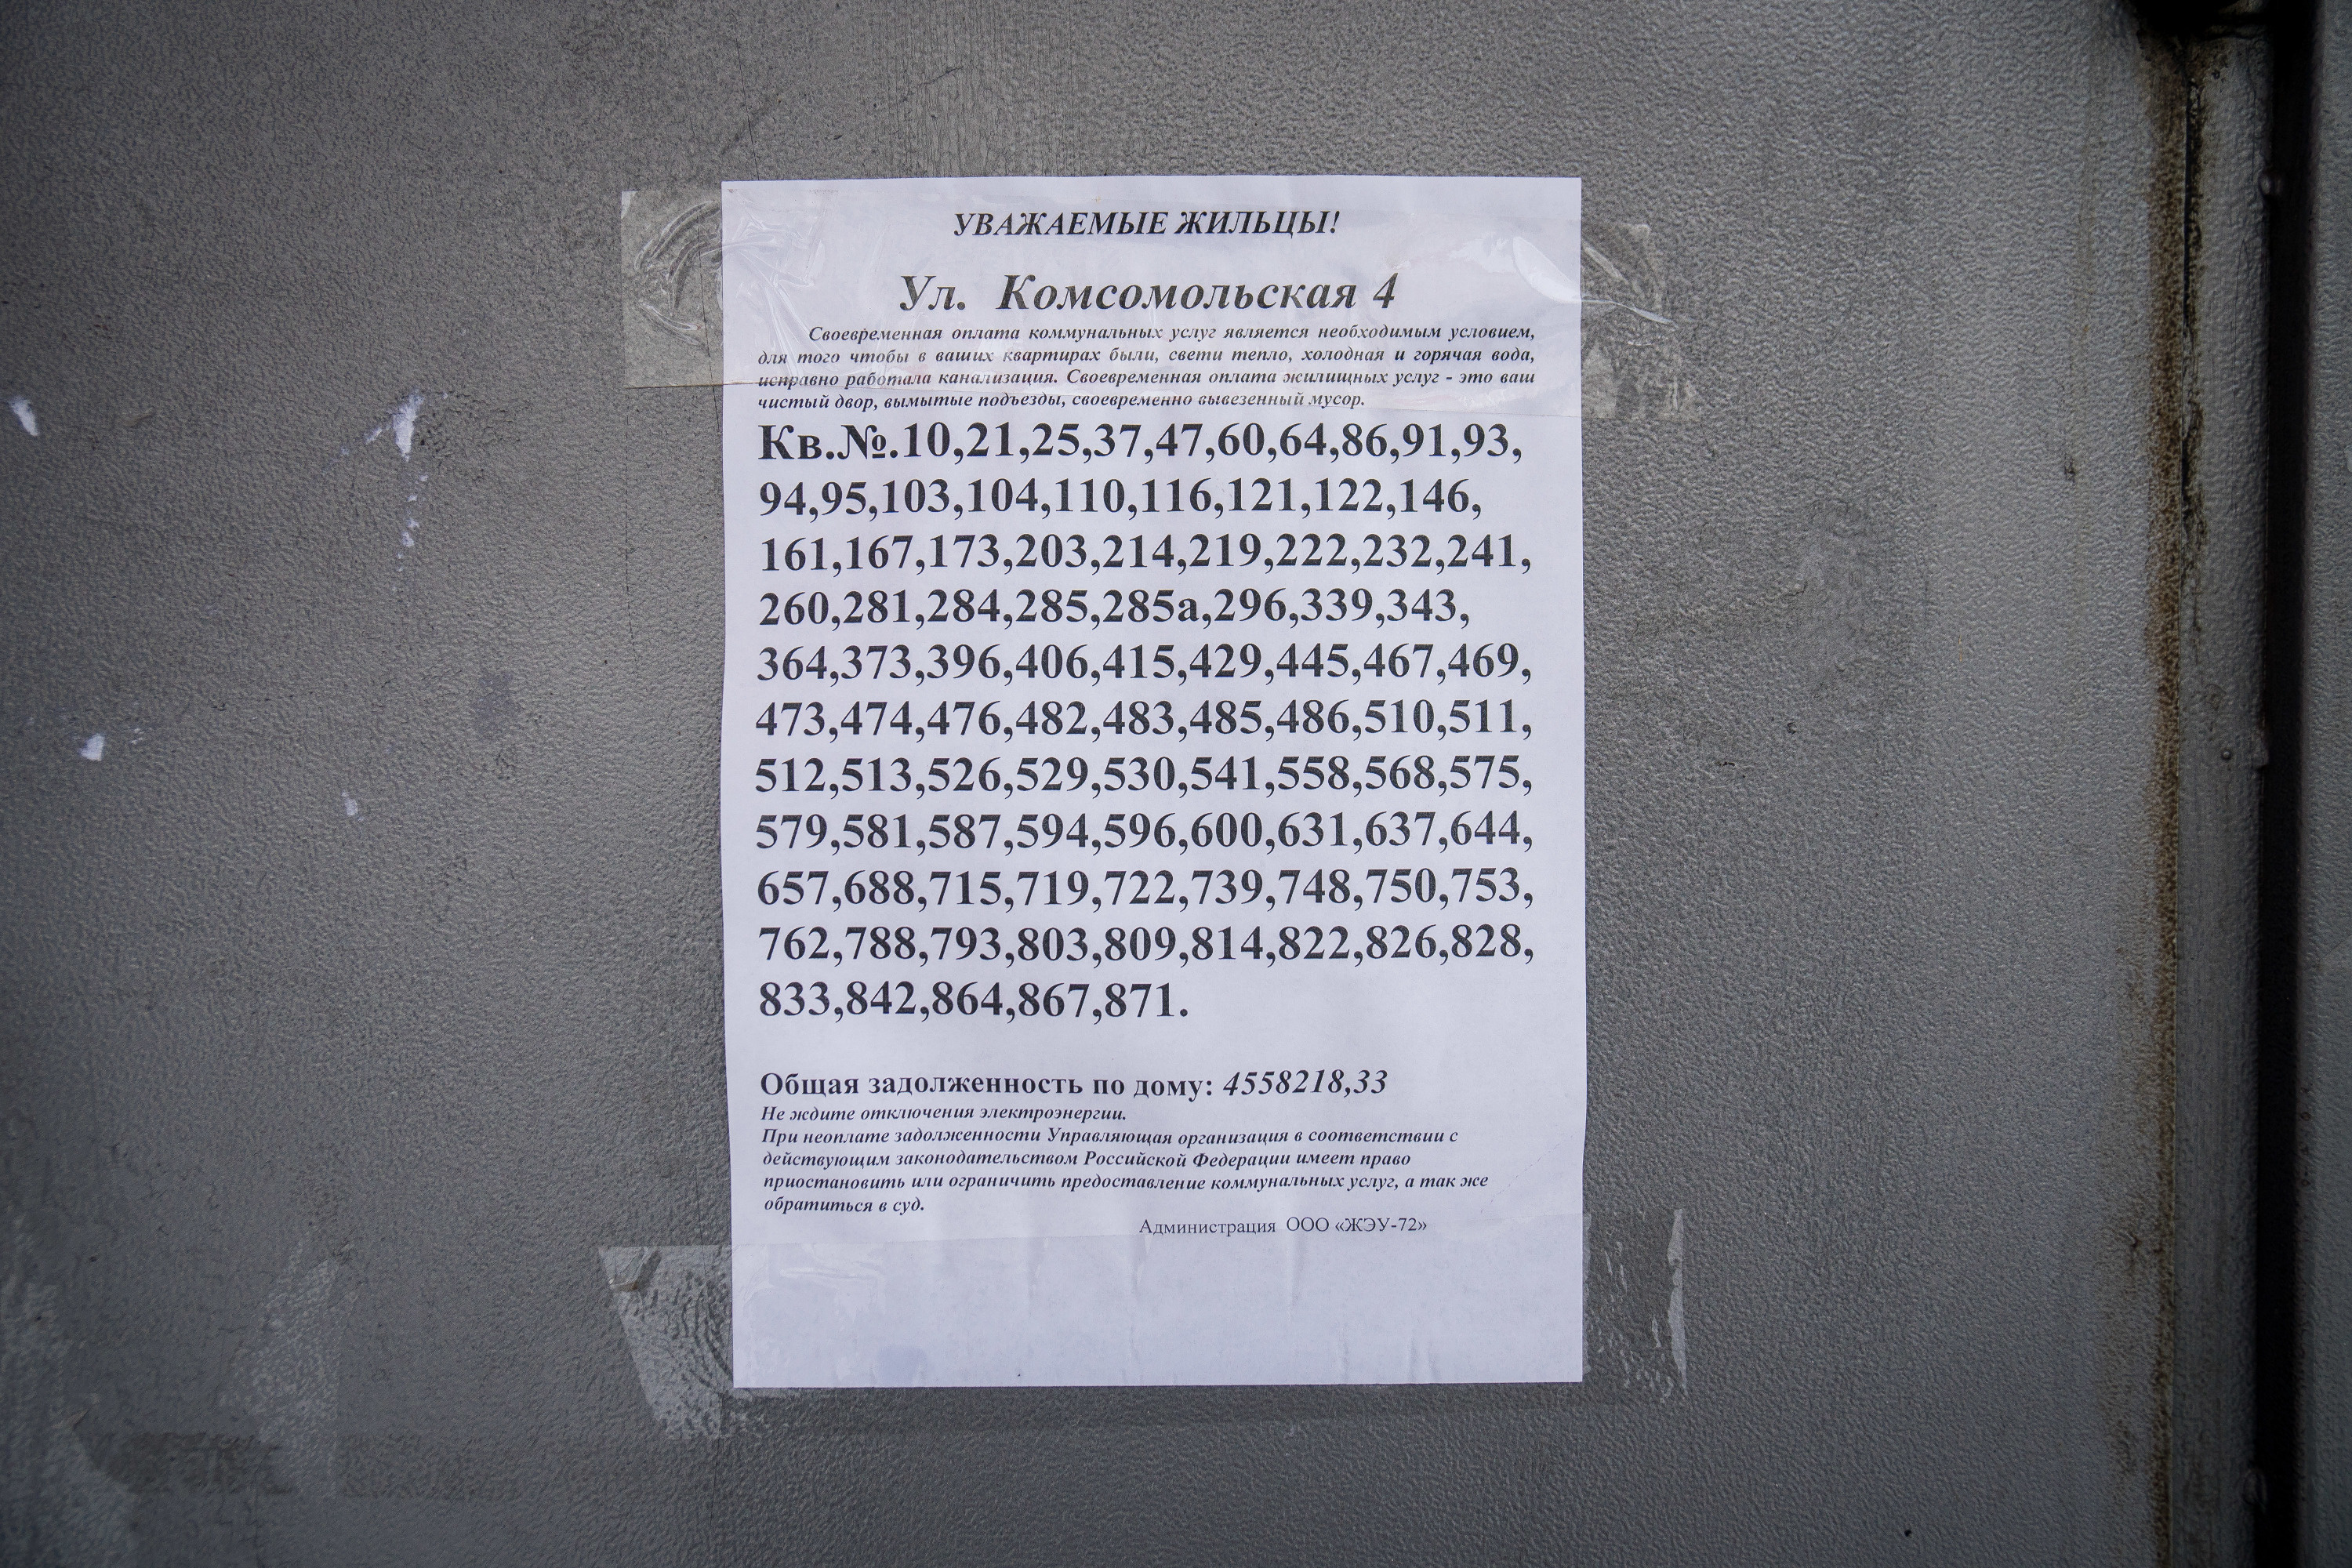 Список должников в доме на Комсомольской, 4